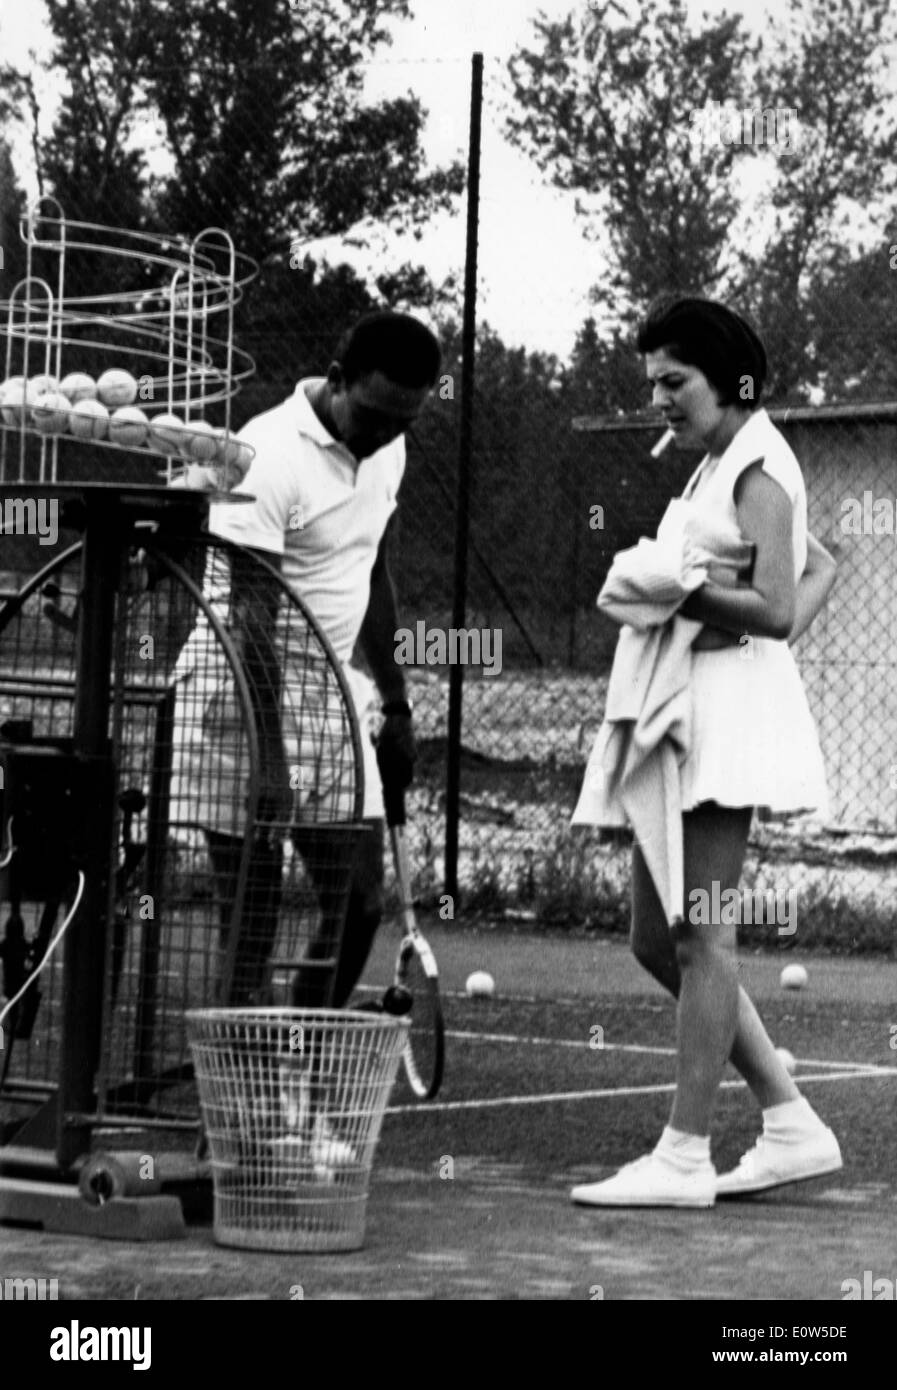 La princesse Soraya avec son entraîneur lors d'une leçon de tennis Banque D'Images